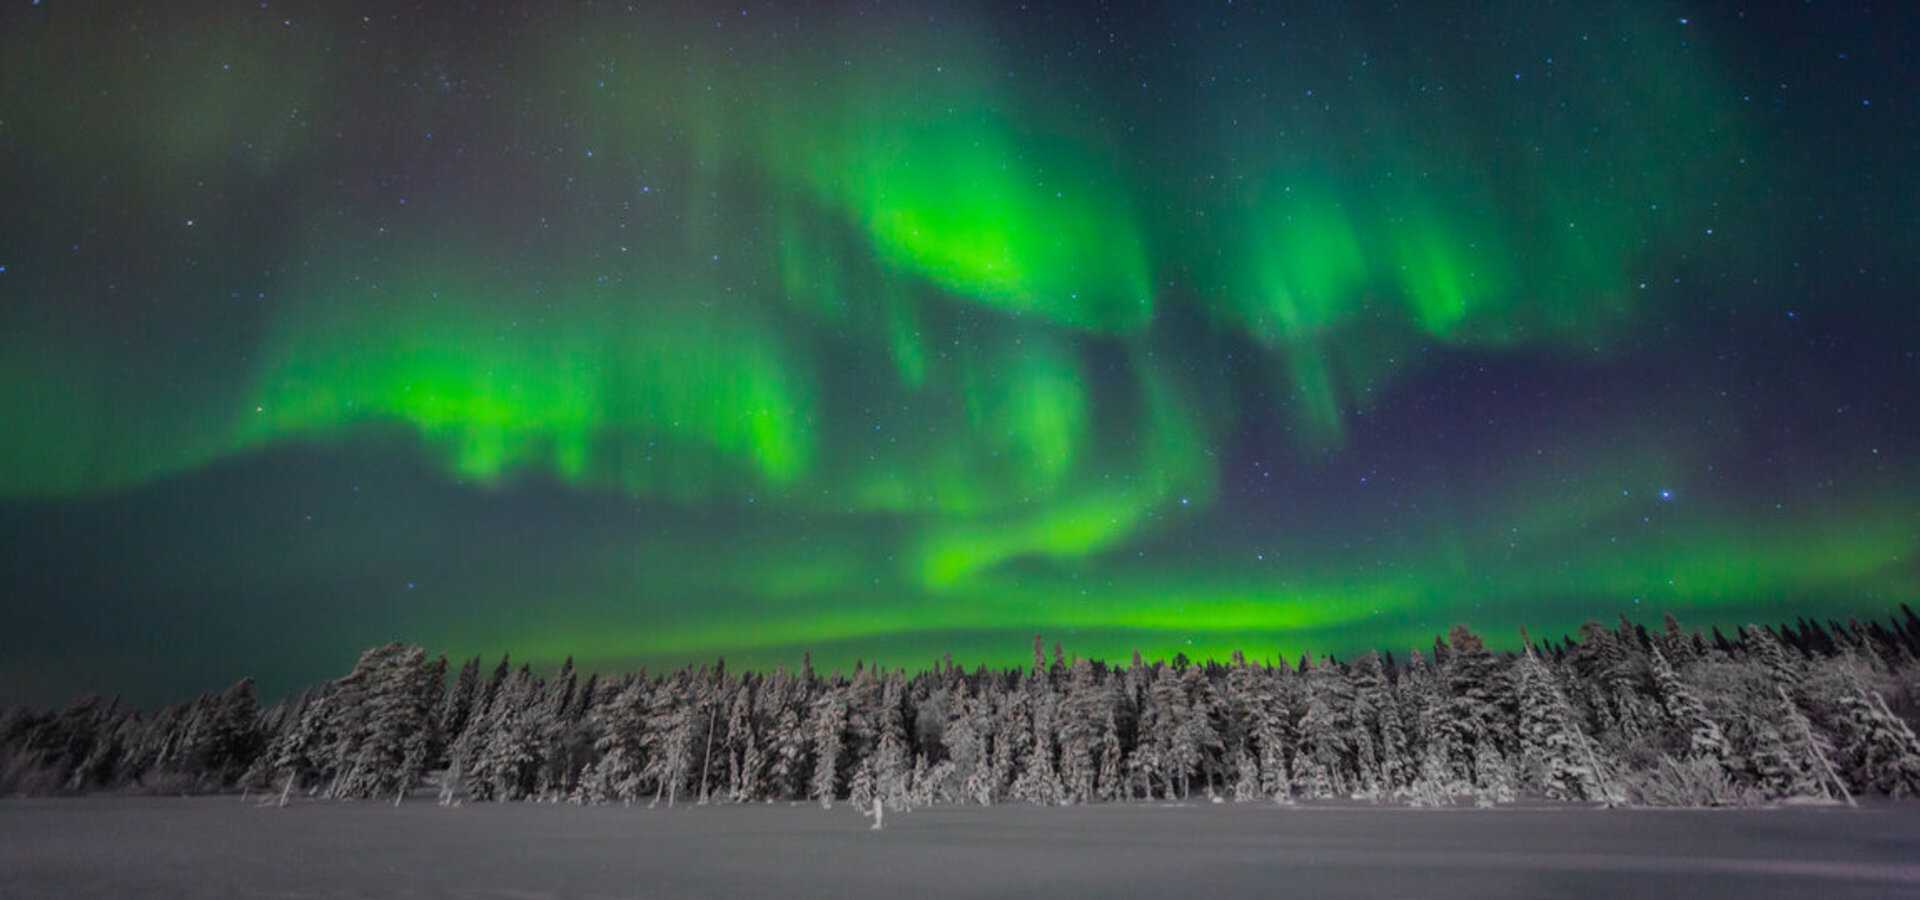 Polar night and aurora borealis